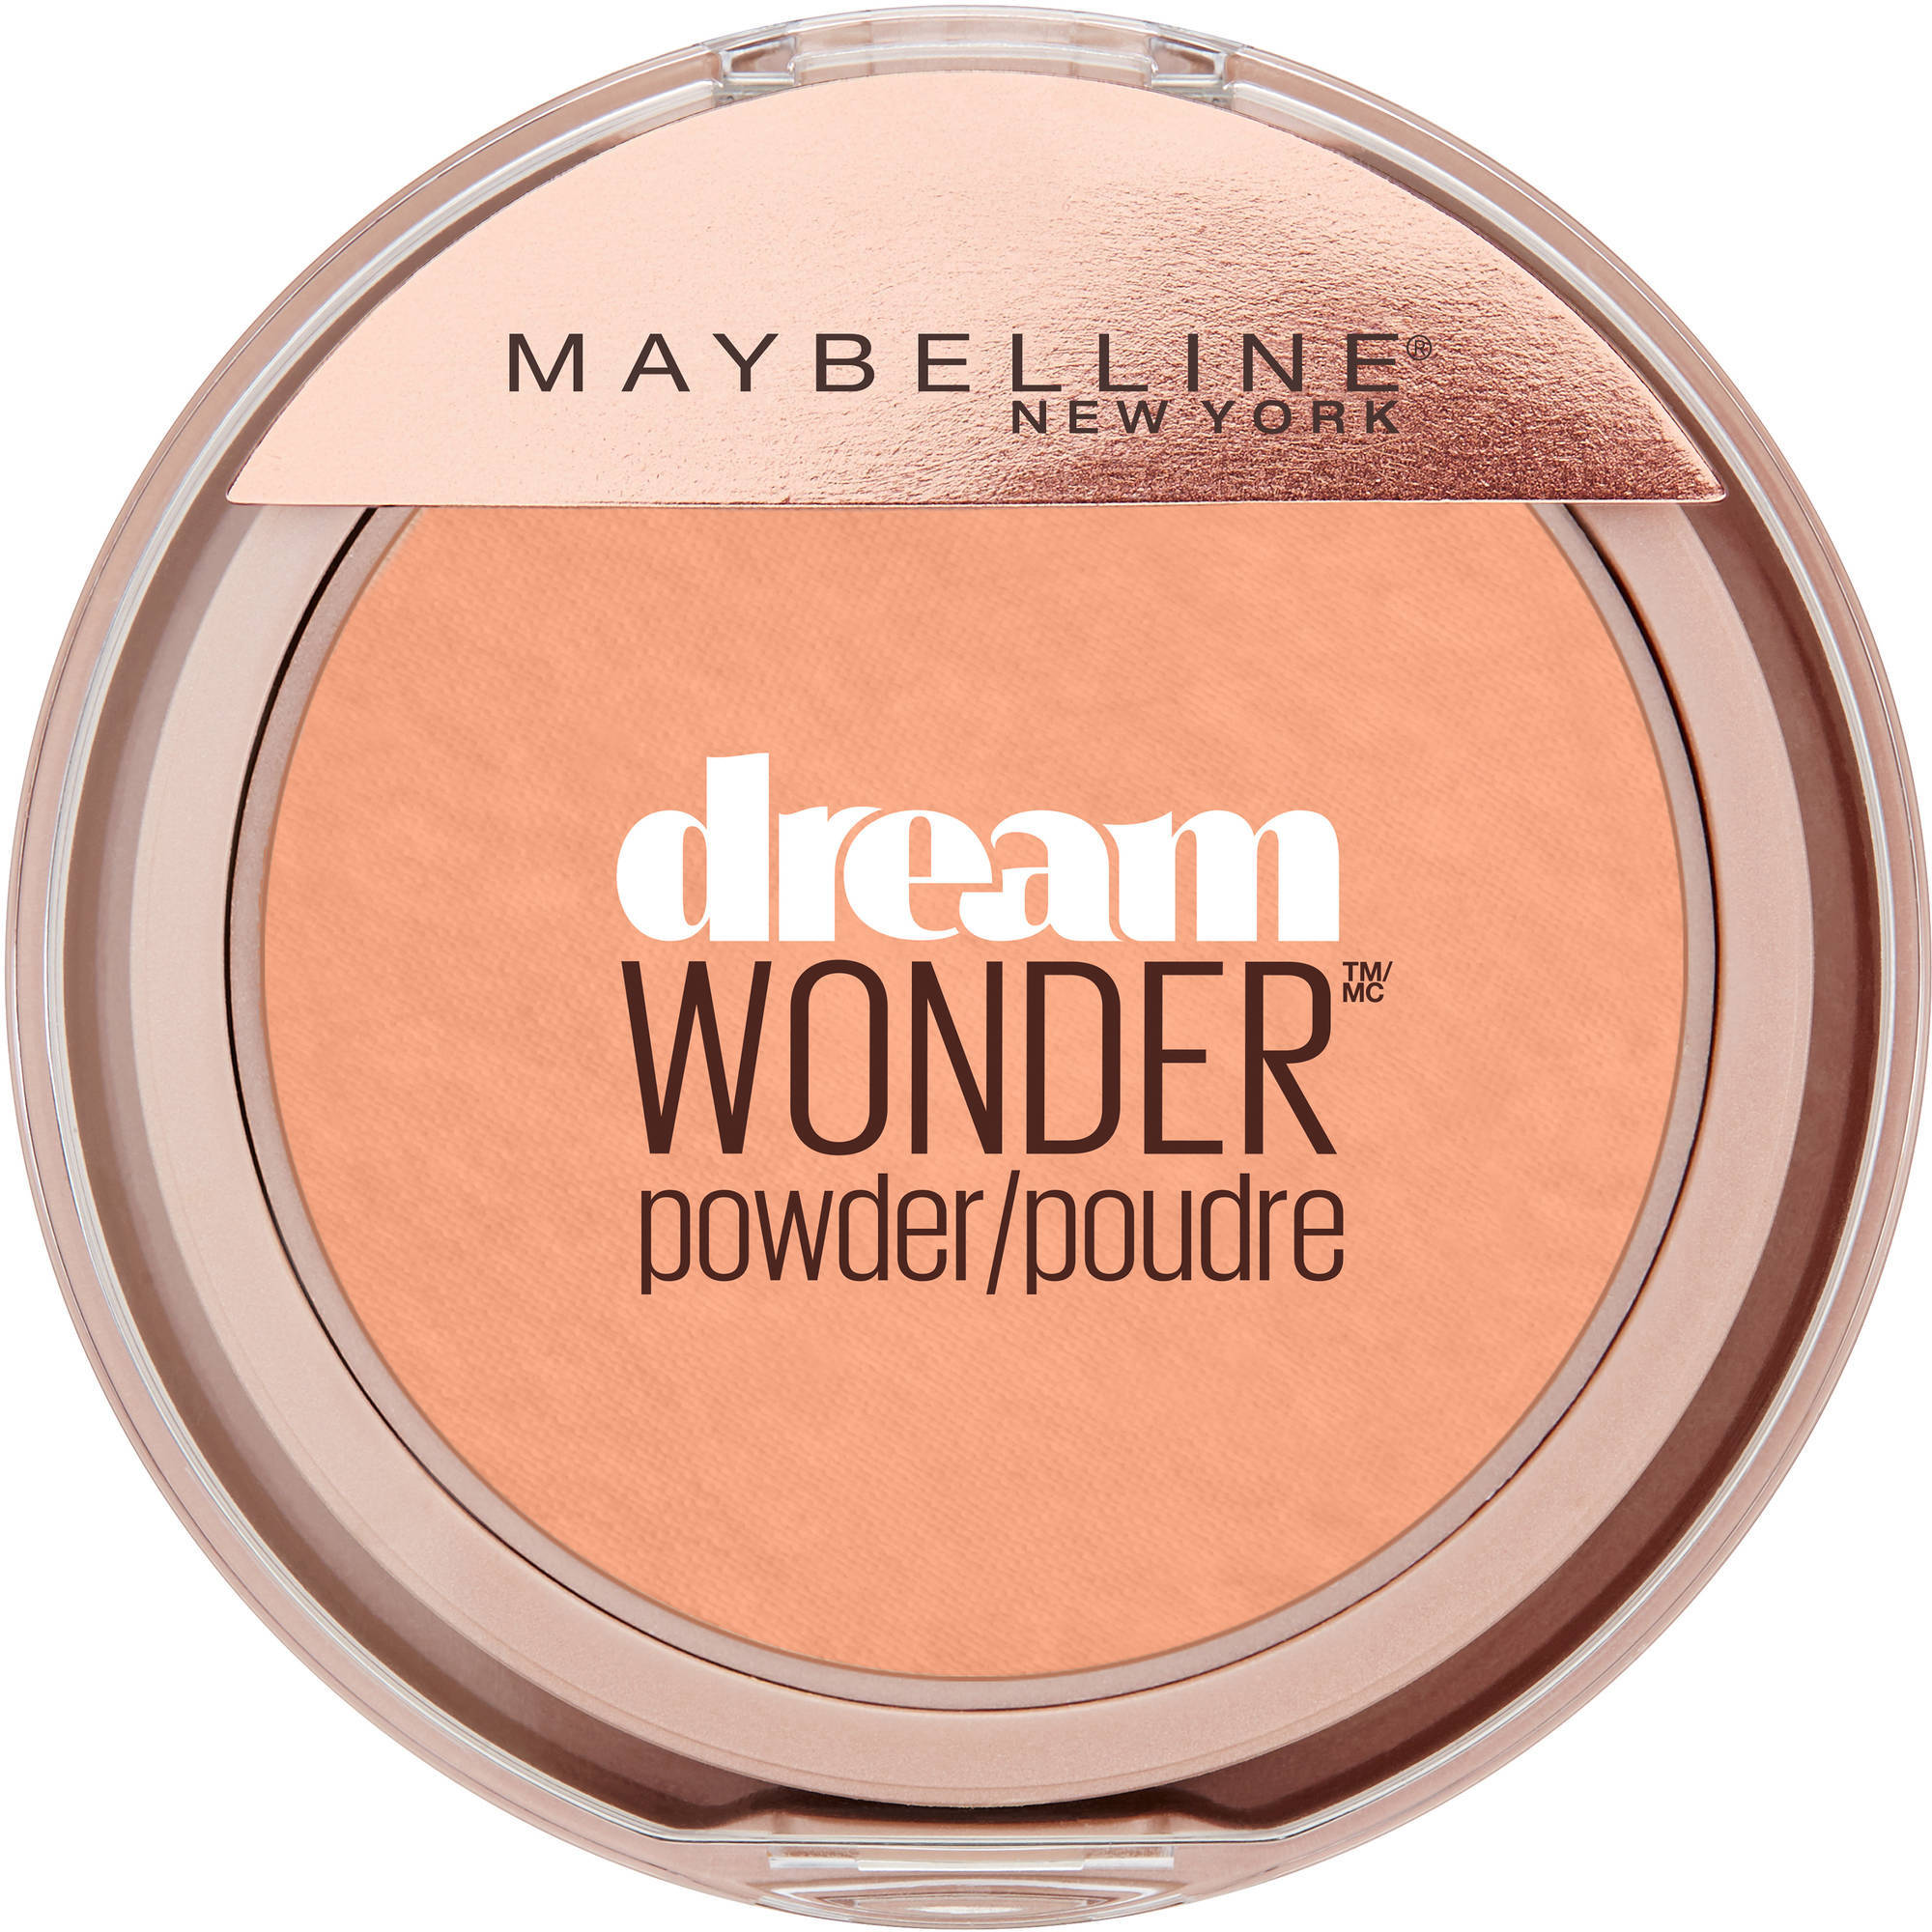 Maybelline New York Dream Wonder Powder, Pure Beige - image 1 of 3